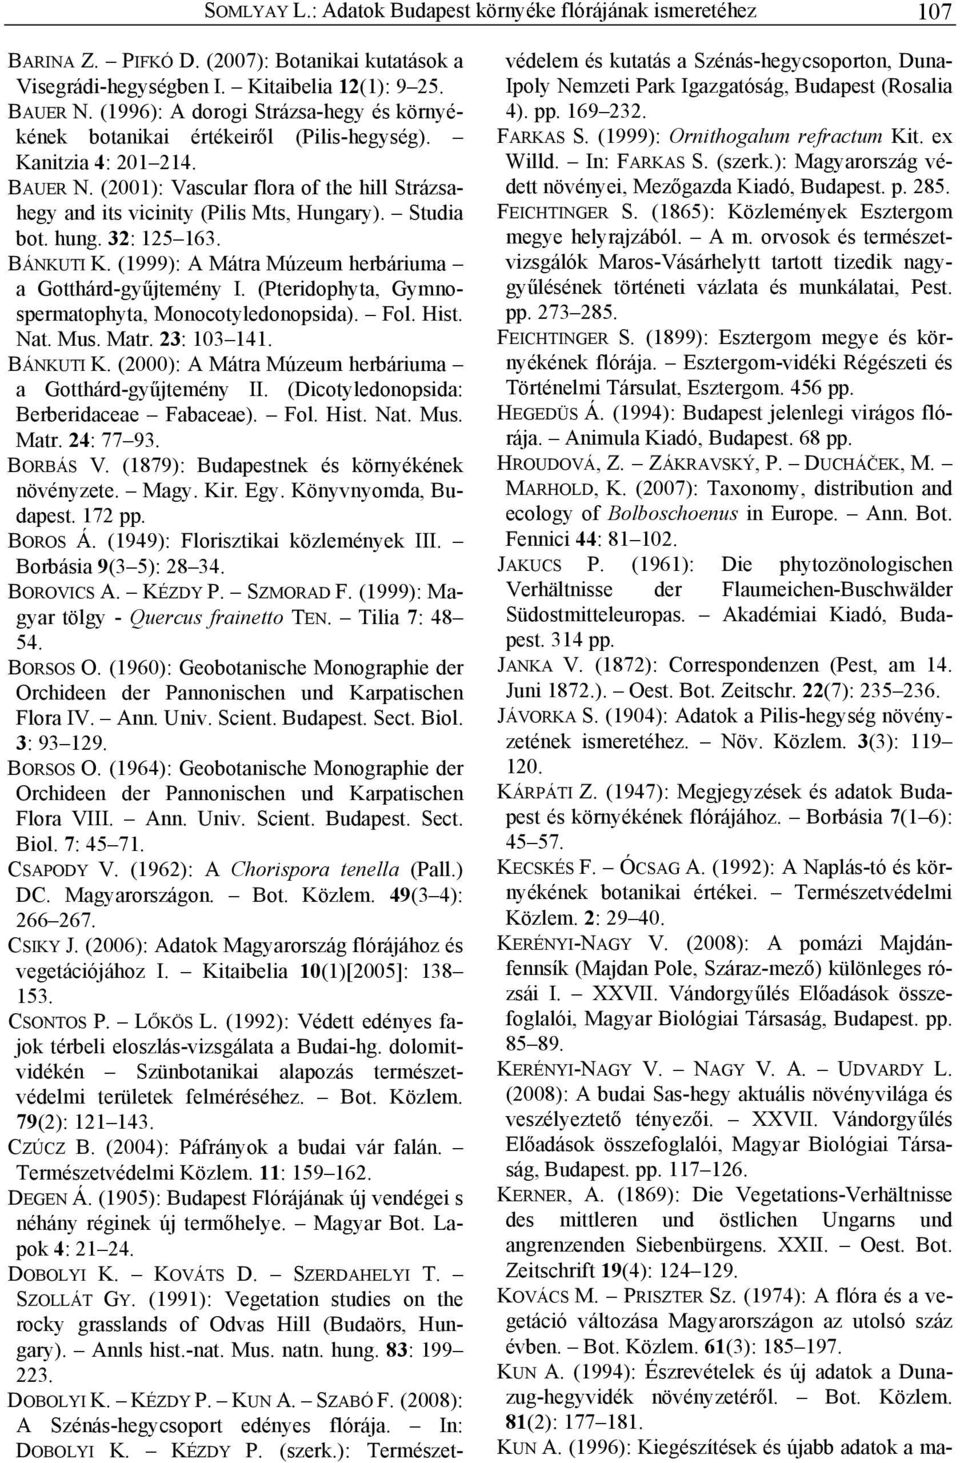 Studia bot. hung. 32: 125 163. BÁNKUTI K. (1999): A Mátra Múzeum herbáriuma a Gotthárd-gyűjtemény I. (Pteridophyta, Gymnospermatophyta, Monocotyledonopsida). Fol. Hist. Nat. Mus. Matr. 23: 103 141.